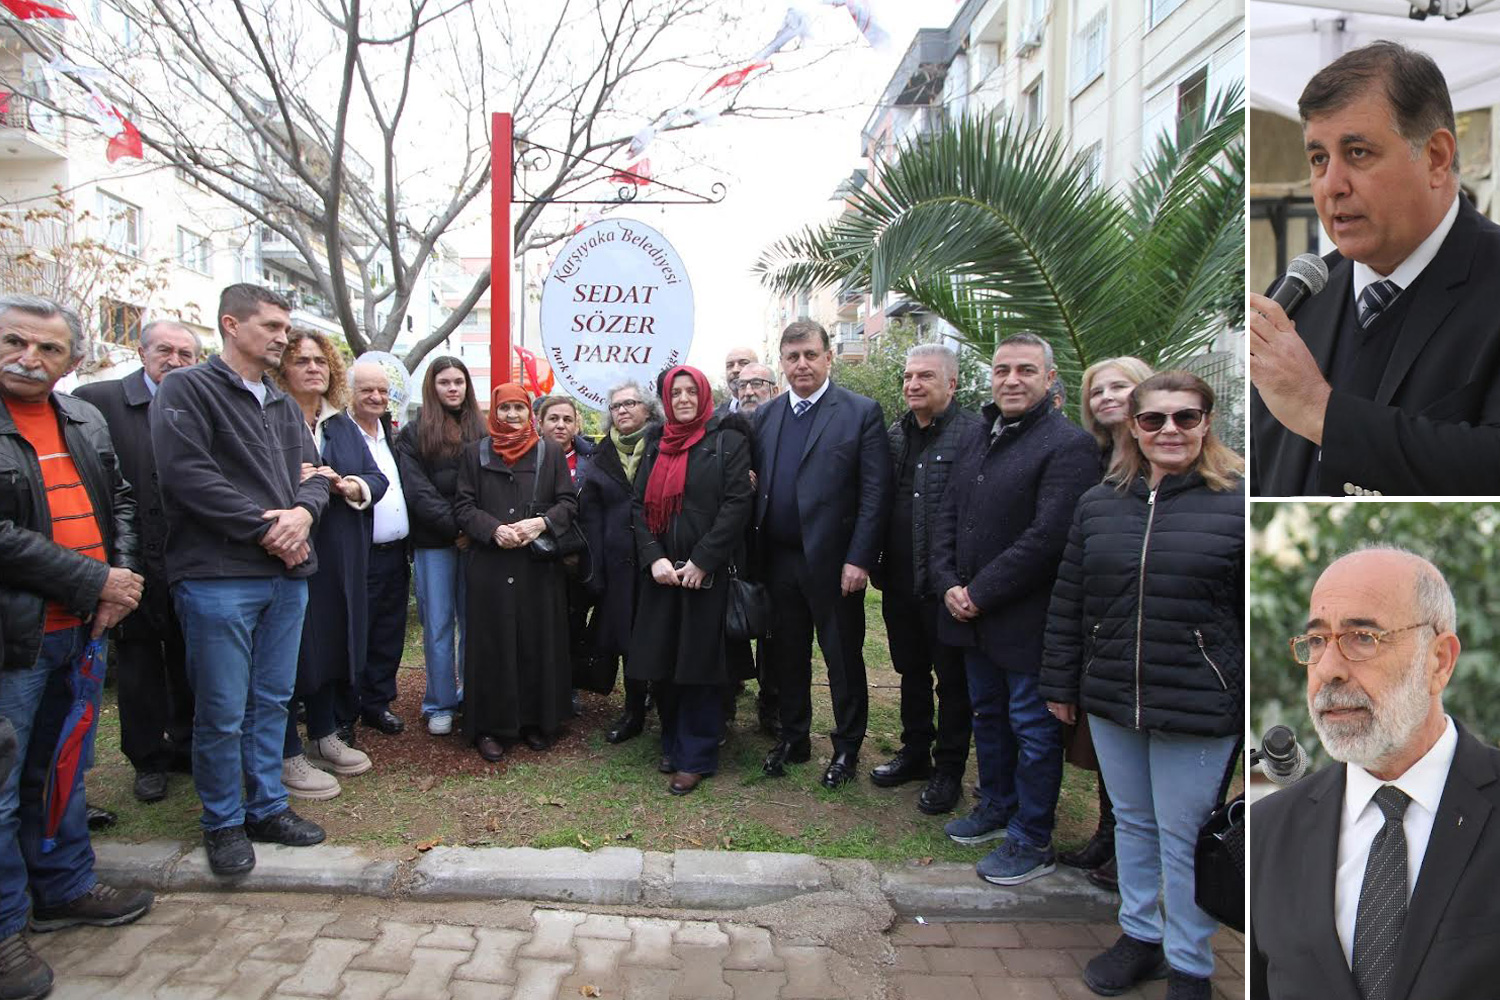 Gazeteci Sedat Sözer'in adı parka verildi